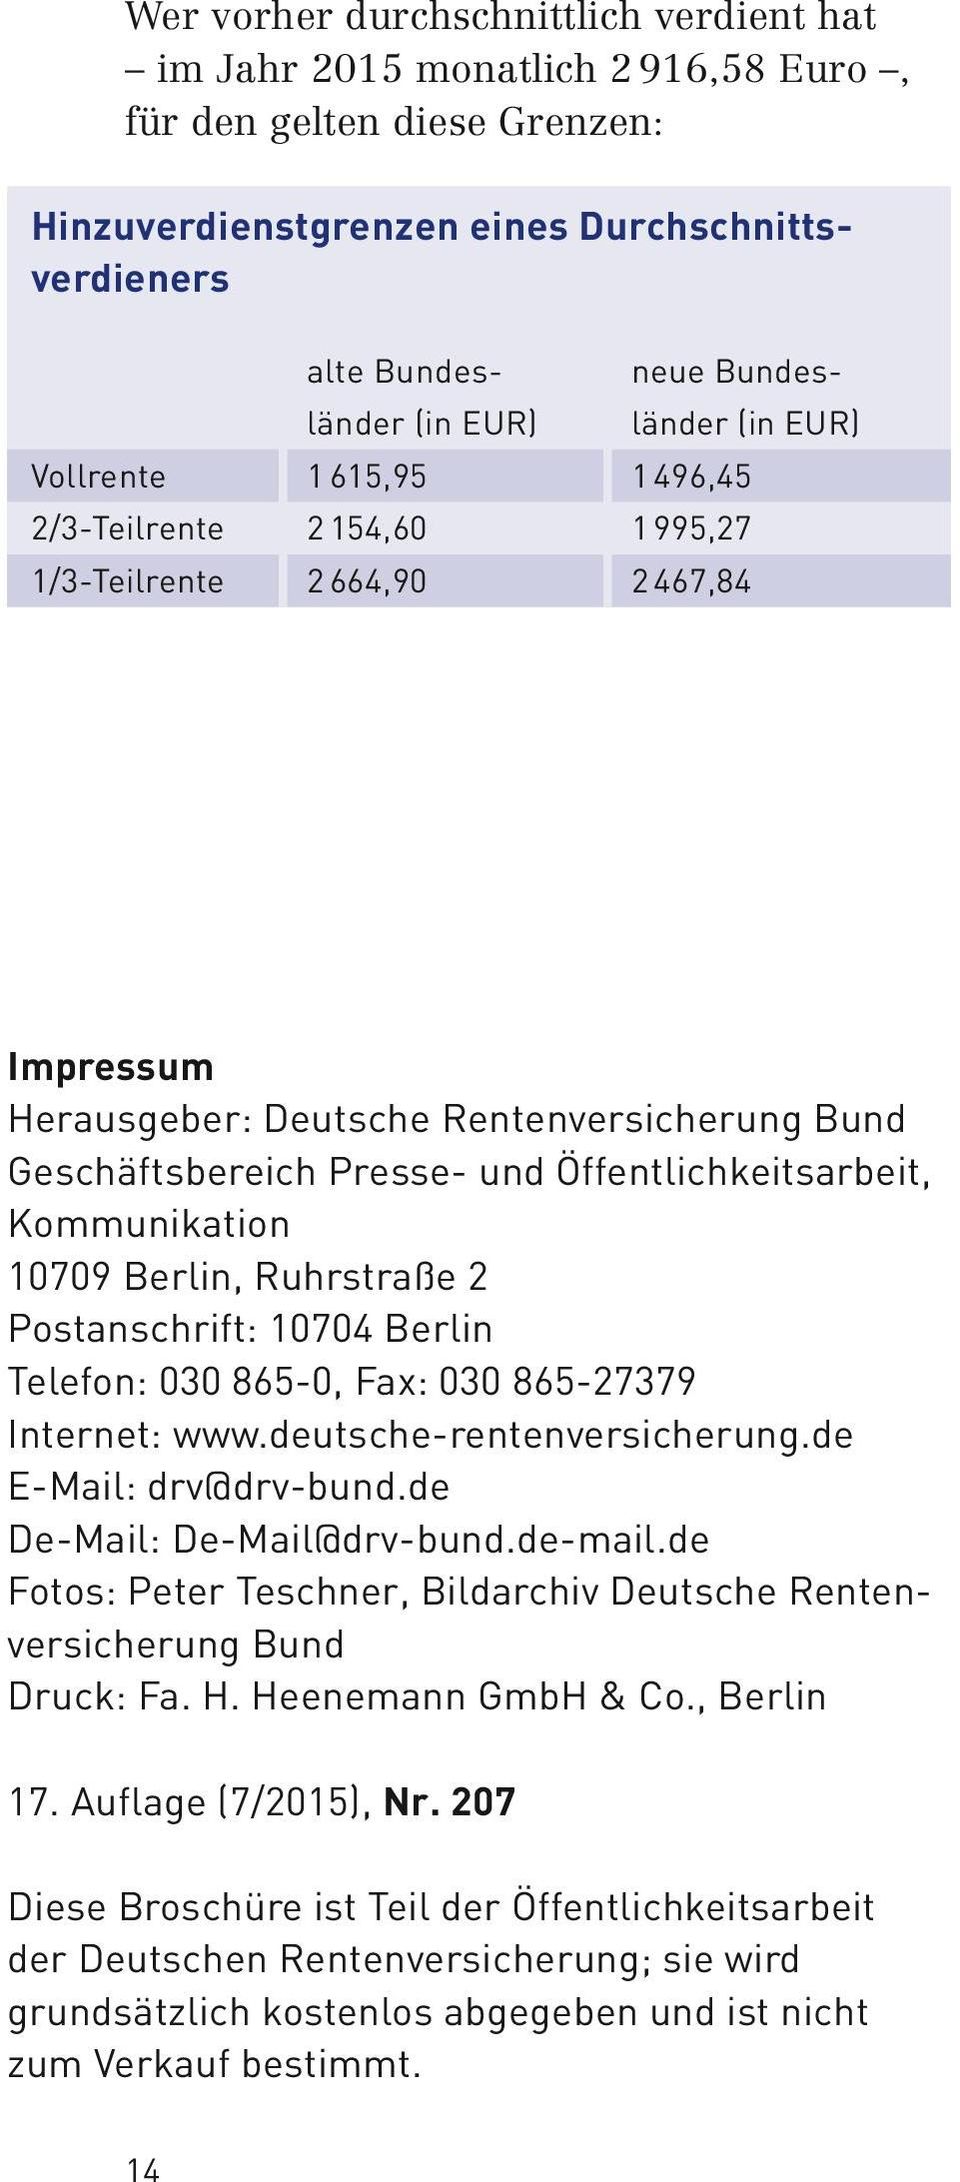 Kommunikation 10709 Berlin, Ruhrstraße 2 Postanschrift: 10704 Berlin Telefon: 030 865-0, Fax: 030 865-27379 Internet: www.deutsche-rentenversicherung.de E-Mail: drv@drv-bund.